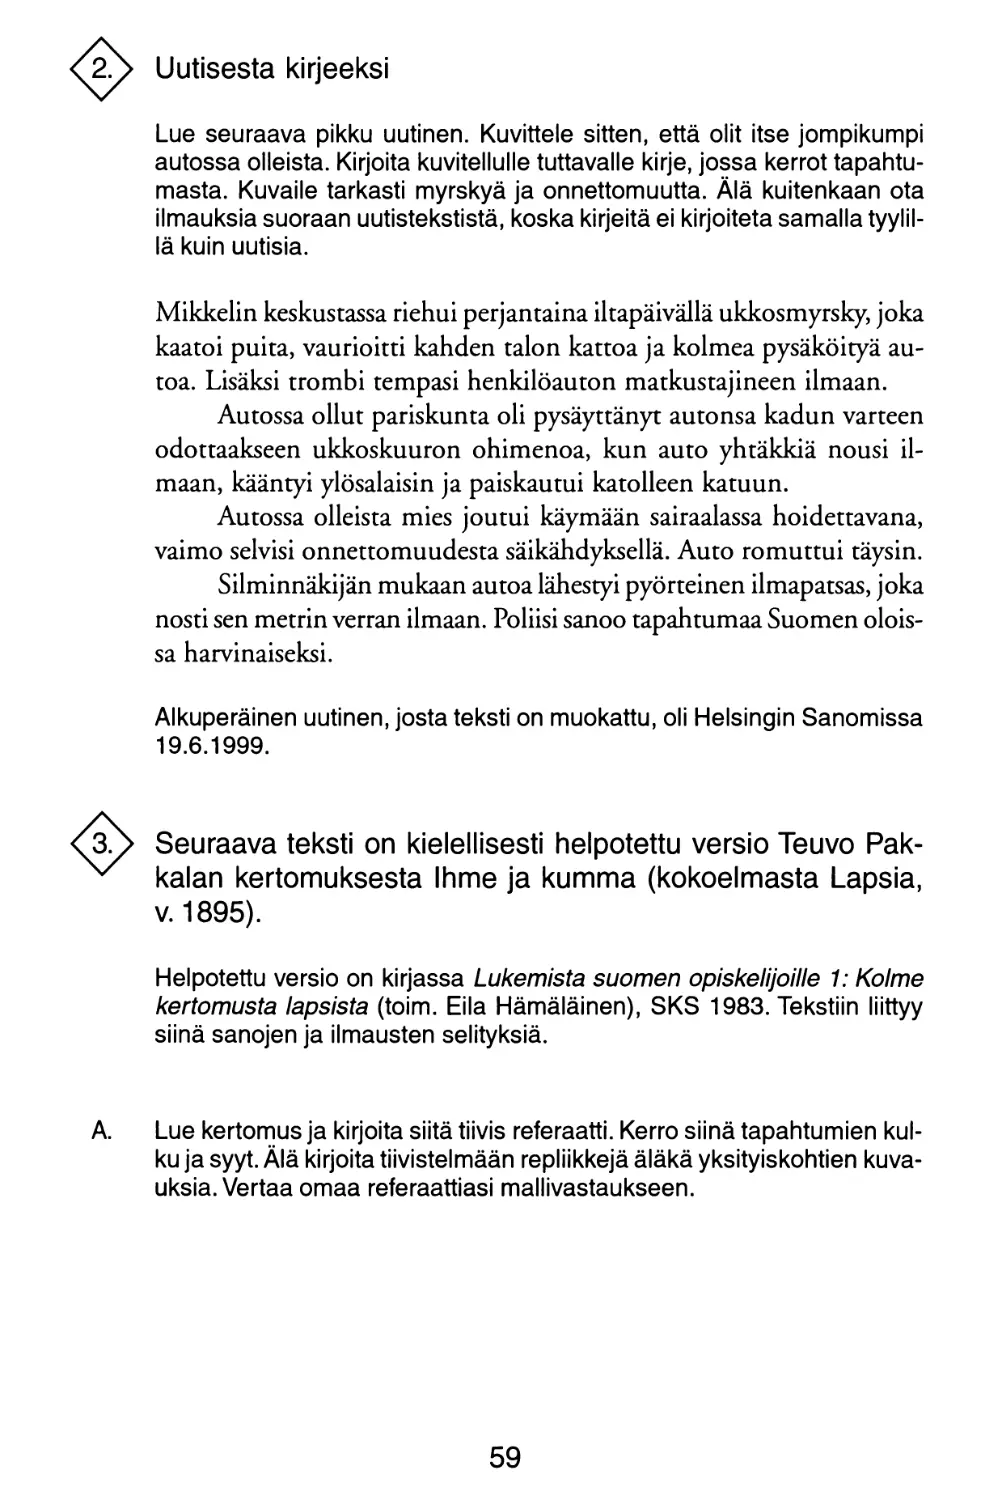 2. Uutisesta kirjeeksi
3. Kielellisesti helpotettu versio Teuvo Pakkalan kertomuksesta 'Ihme ja kumma'